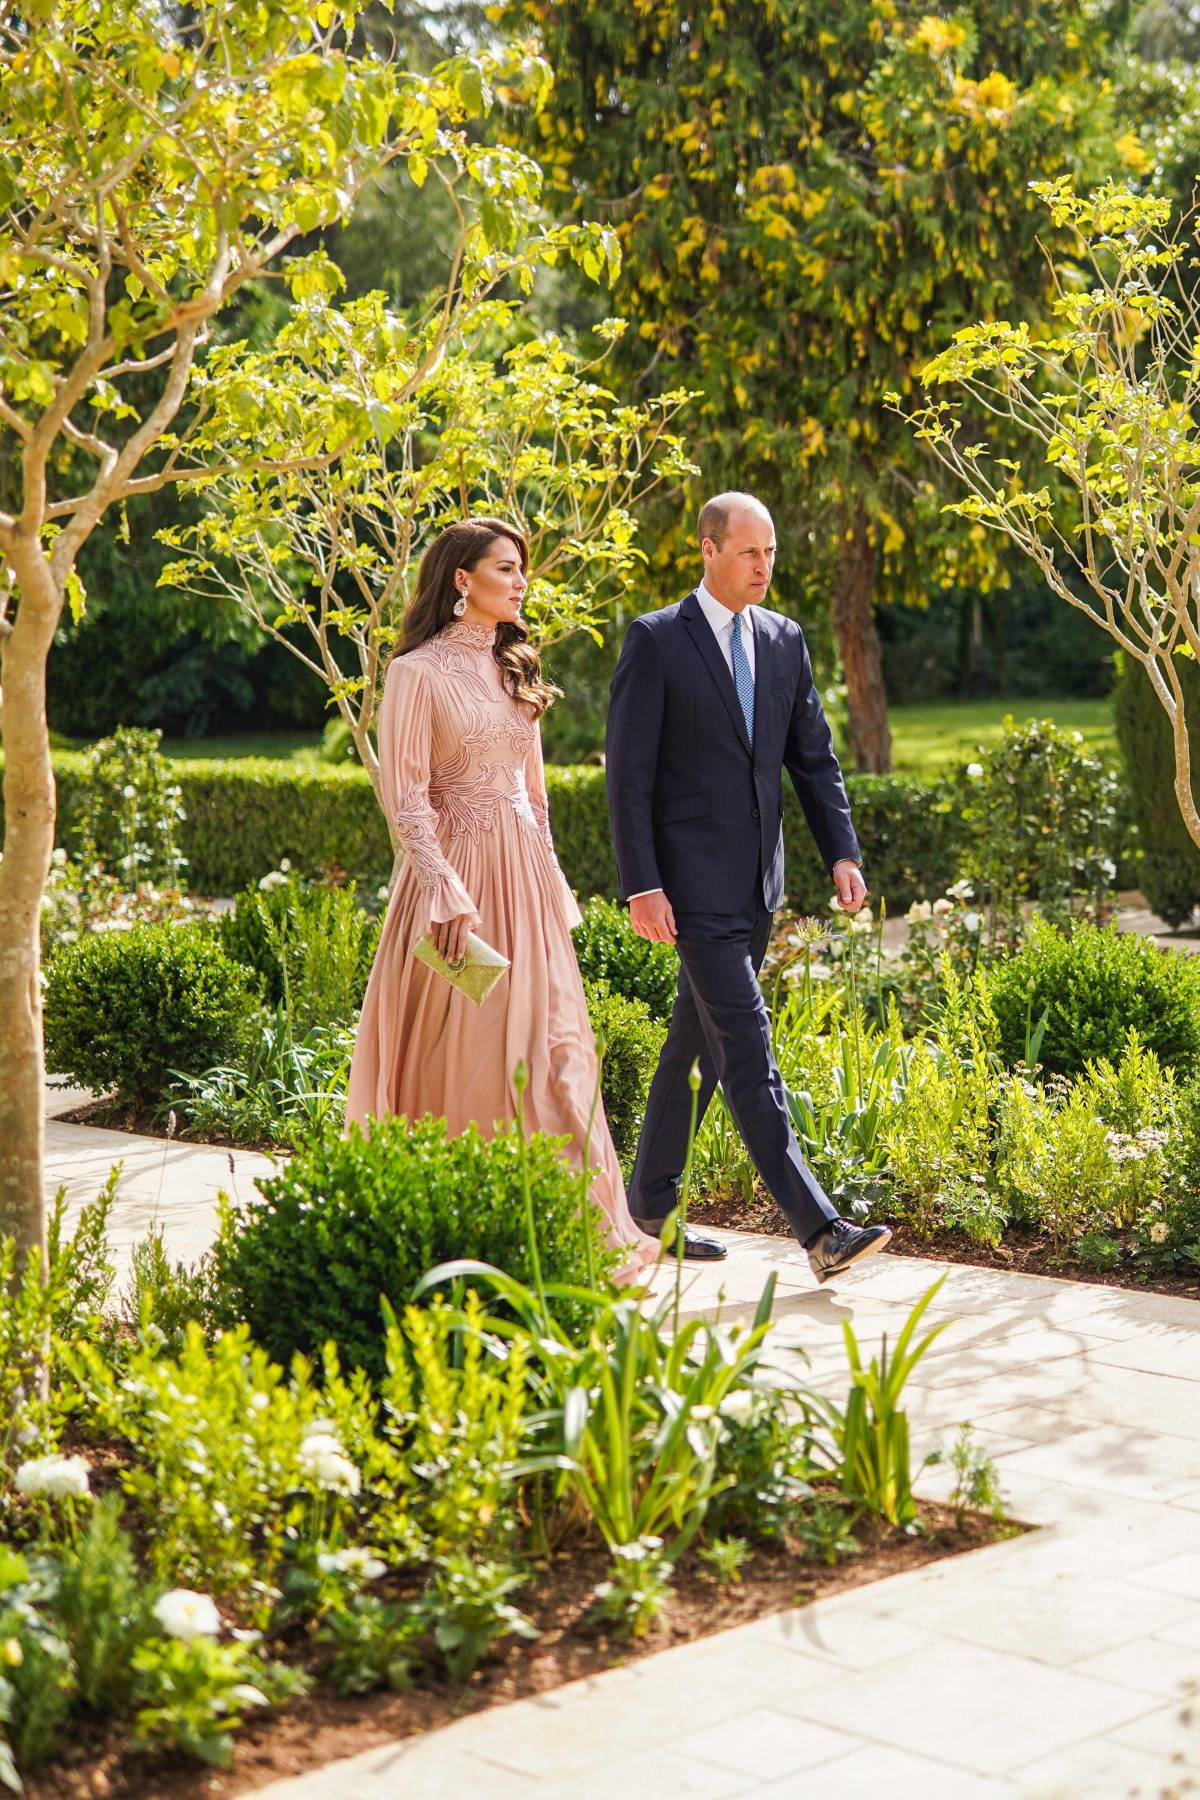 Księżna Kate w jasnoróżowej sukni Eliego Saaba na ślubie w Jordanii. Księżna Kate na ślub księcia Husajna z Rajwą Al Saif założyła suknię Eliego Saaba, jedną z najbardziej zjawiskowych podczas tej uroczystości.